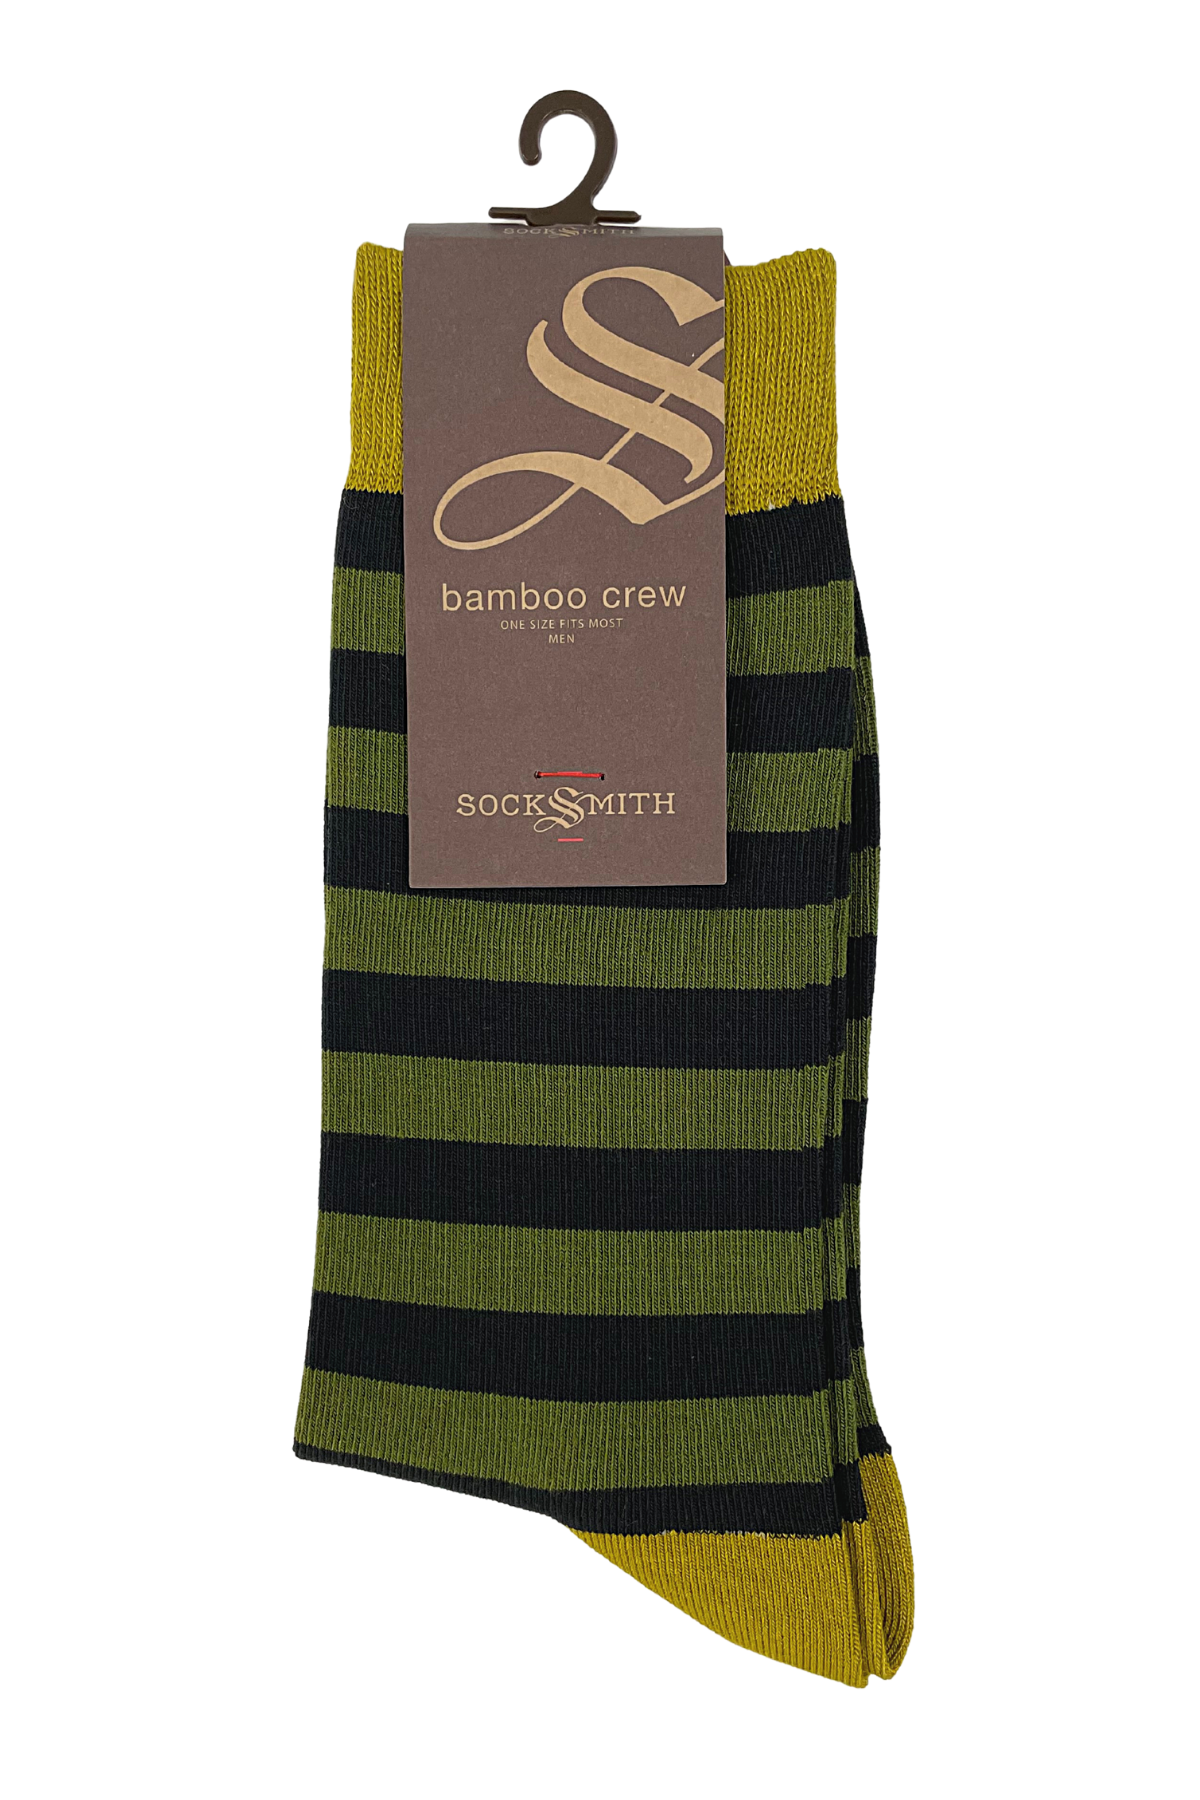 Socksmith Bamboo Stripe Socks - Olive - 6_2d98c233-4c29-4c01-bca7-49ce49be0029